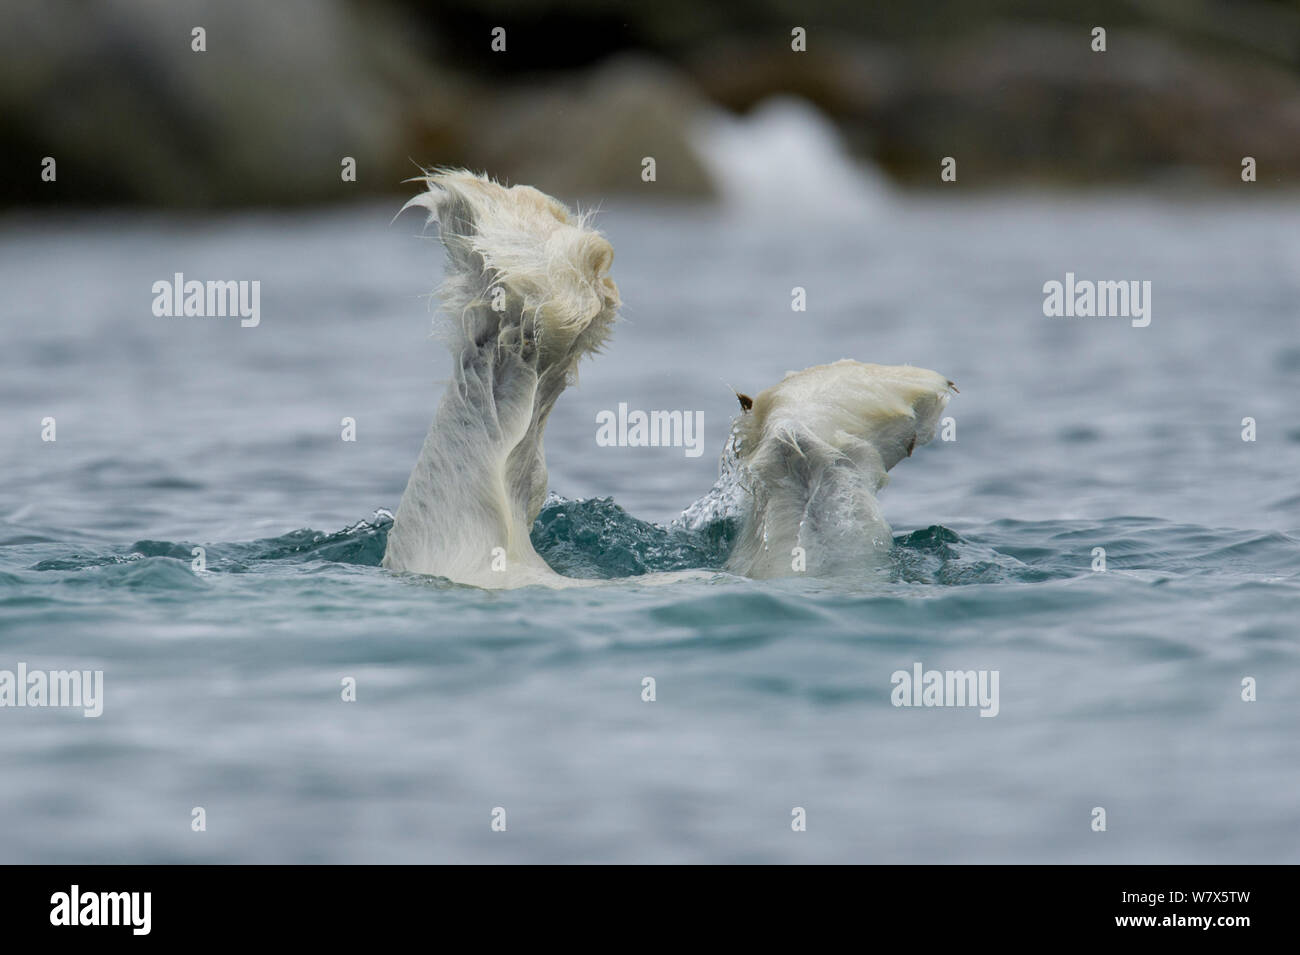 Orso polare (Ursus maritimus) subacquea Immersioni alla alimentazione di una balena sommersa carcassa, Svalbard, Norvegia. Luglio. Foto Stock